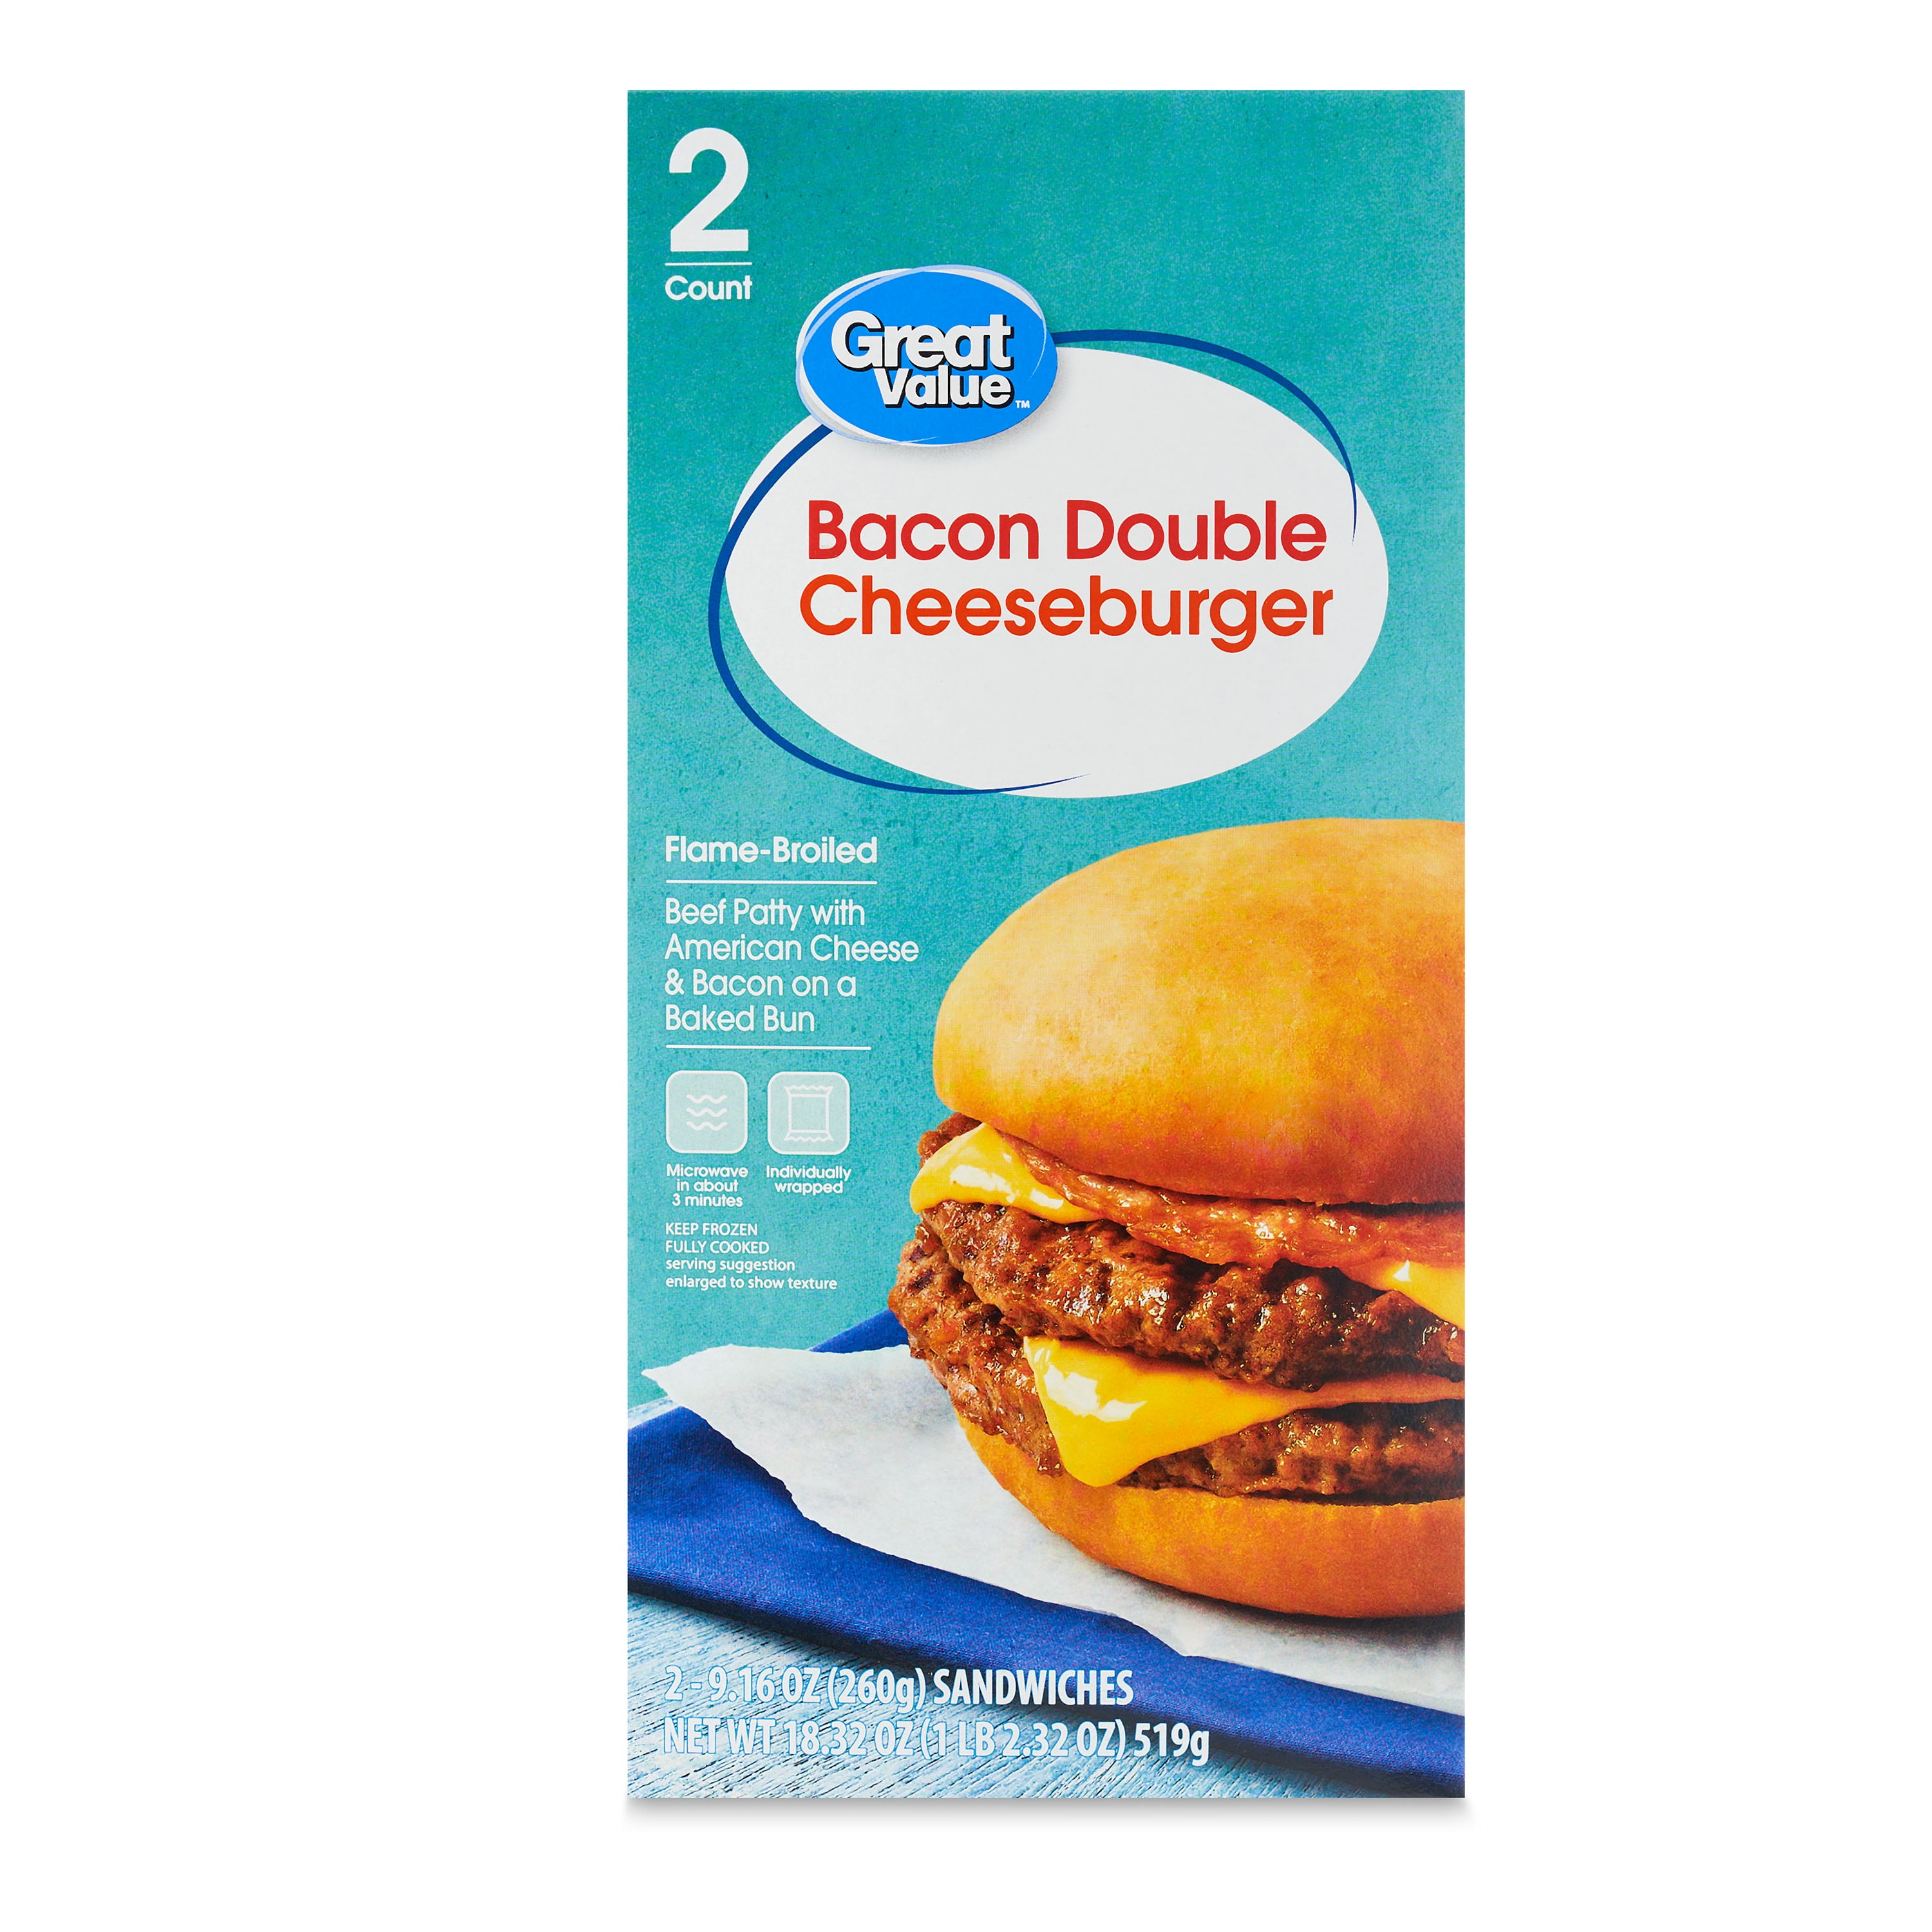 Double Bacon Cheeseburger - COBS Bread USA